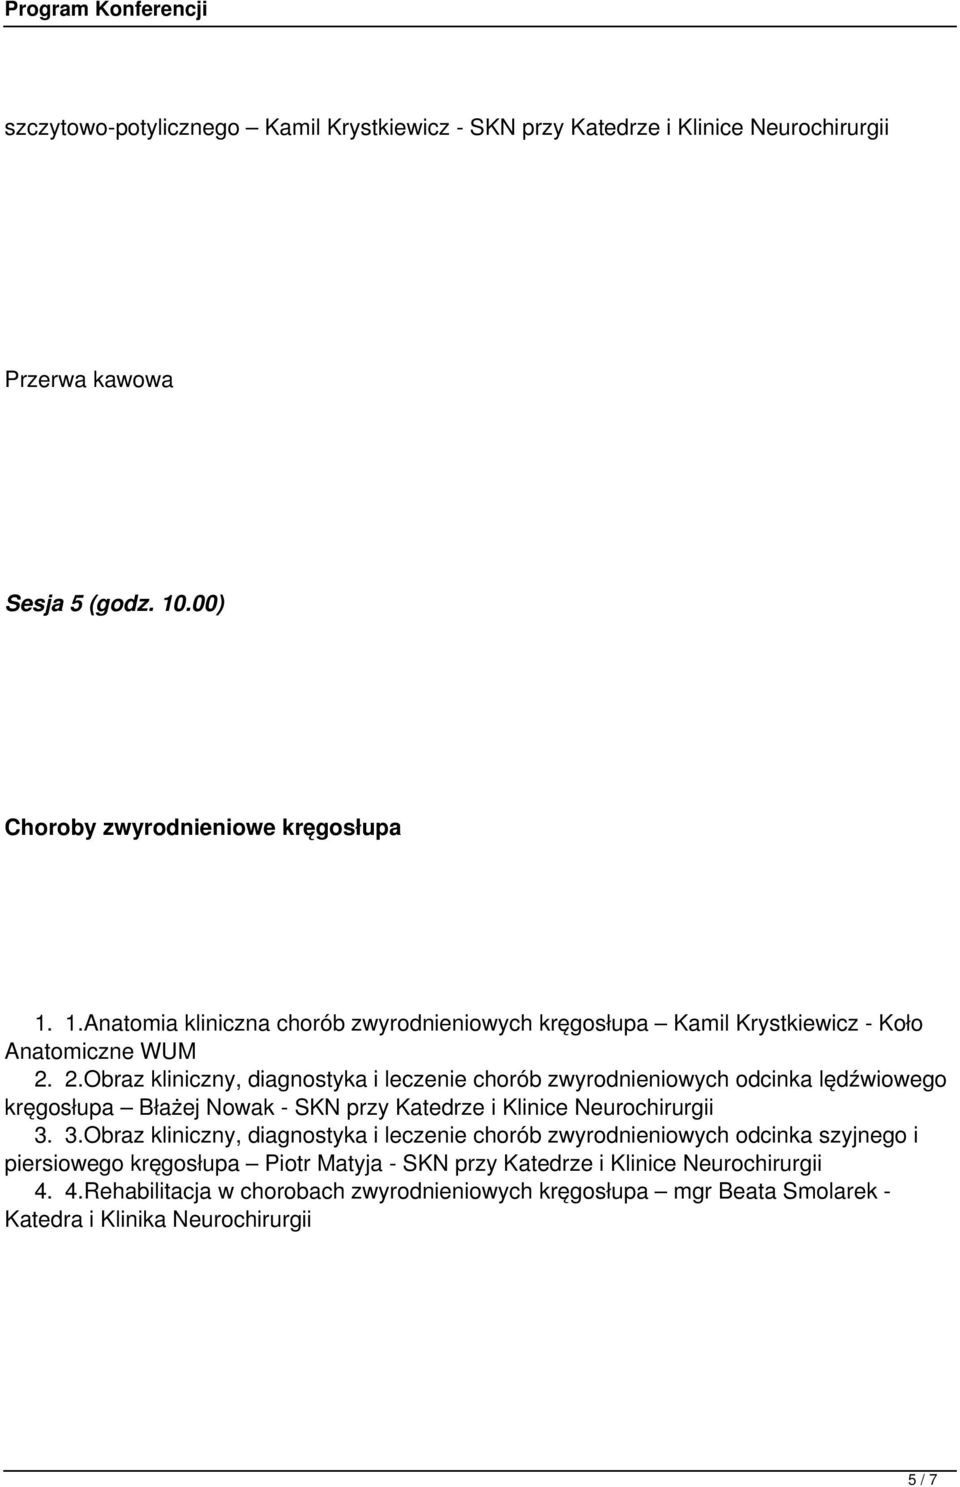 2.Obraz kliniczny, diagnostyka i leczenie chorób zwyrodnieniowych odcinka lędźwiowego kręgosłupa Błażej Nowak - SKN przy Katedrze i Klinice Neurochirurgii 3.